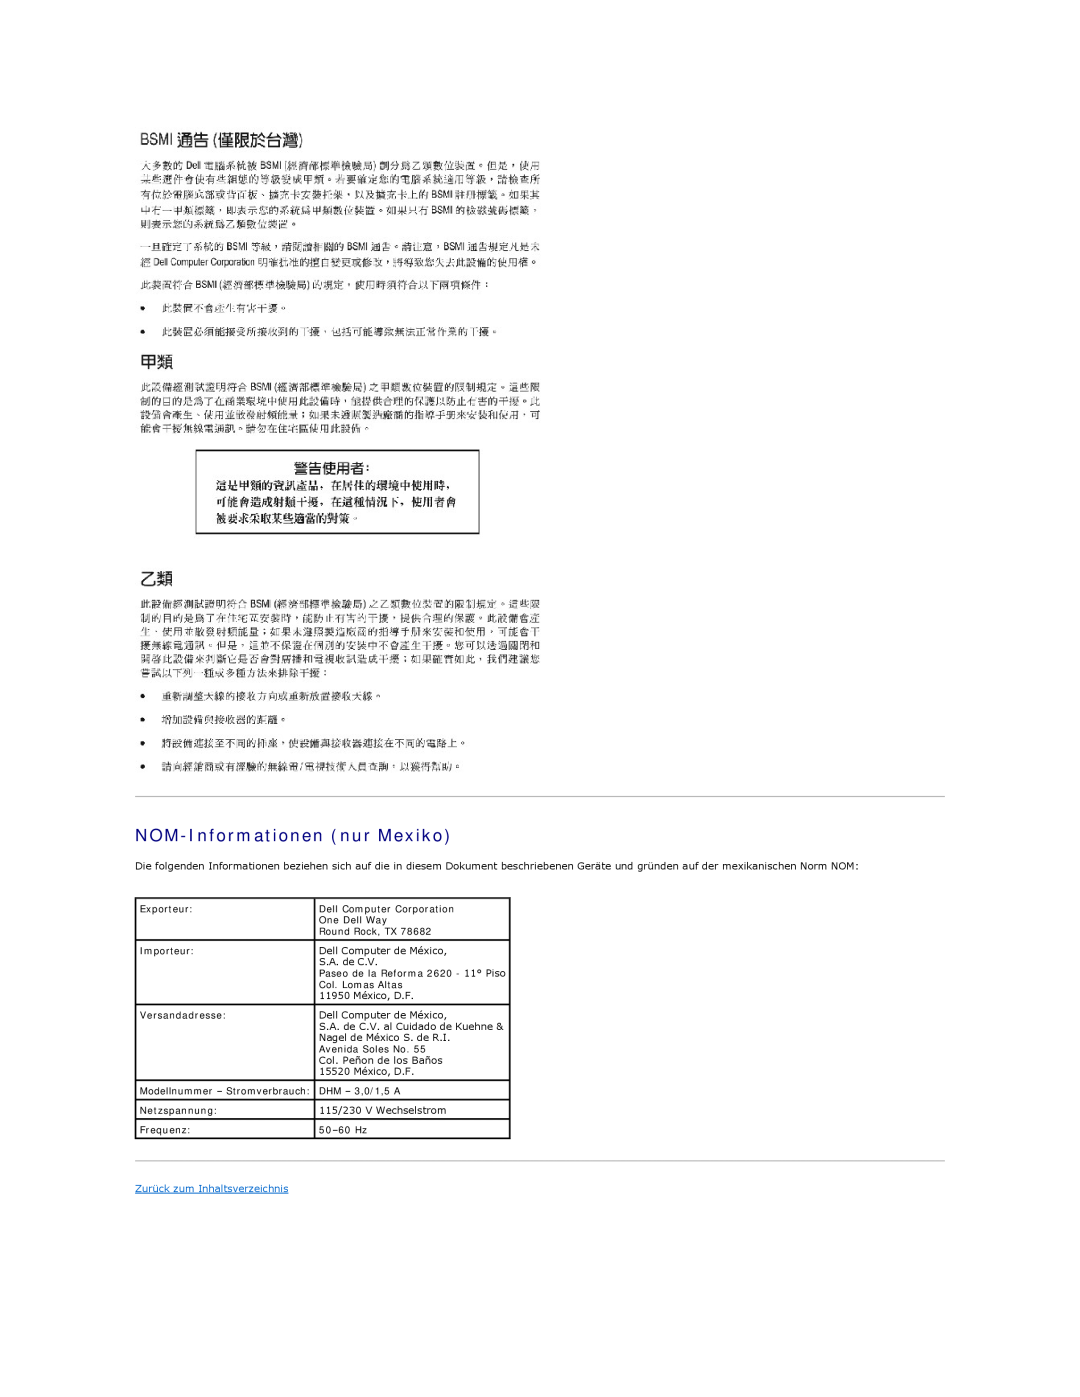 Dell 350 manual NOM-Informationennur Mexiko, Zurück zum Inhaltsverzeichnis 